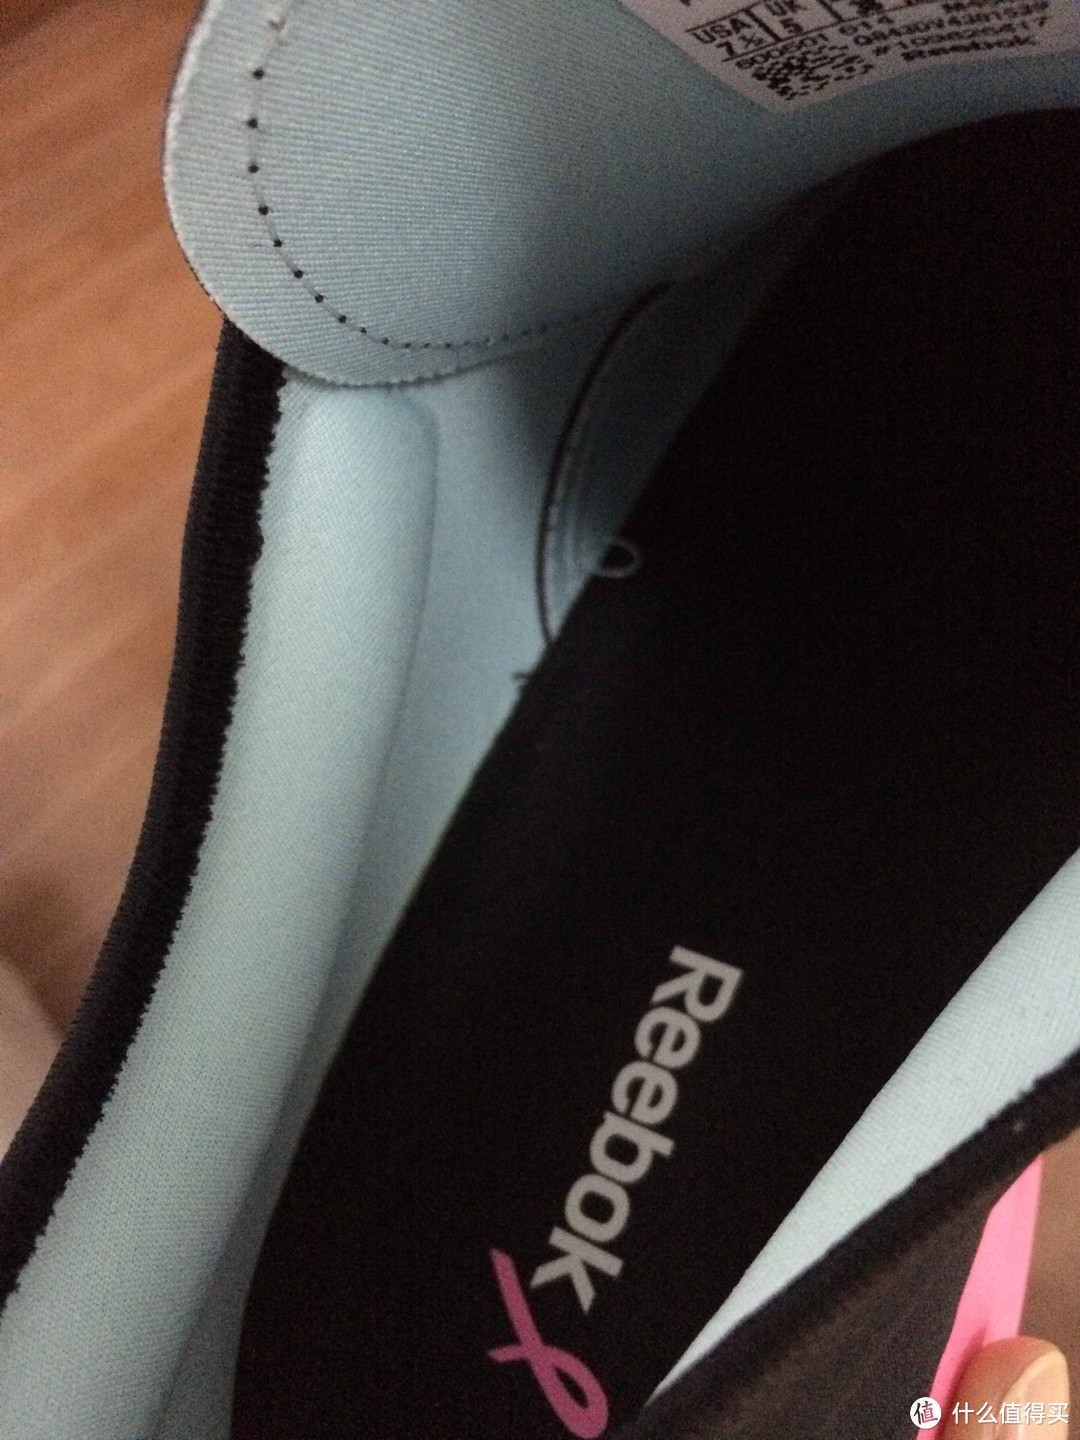 鞋帮子的两侧都有类似bra的泡棉材质，挺舒服的。